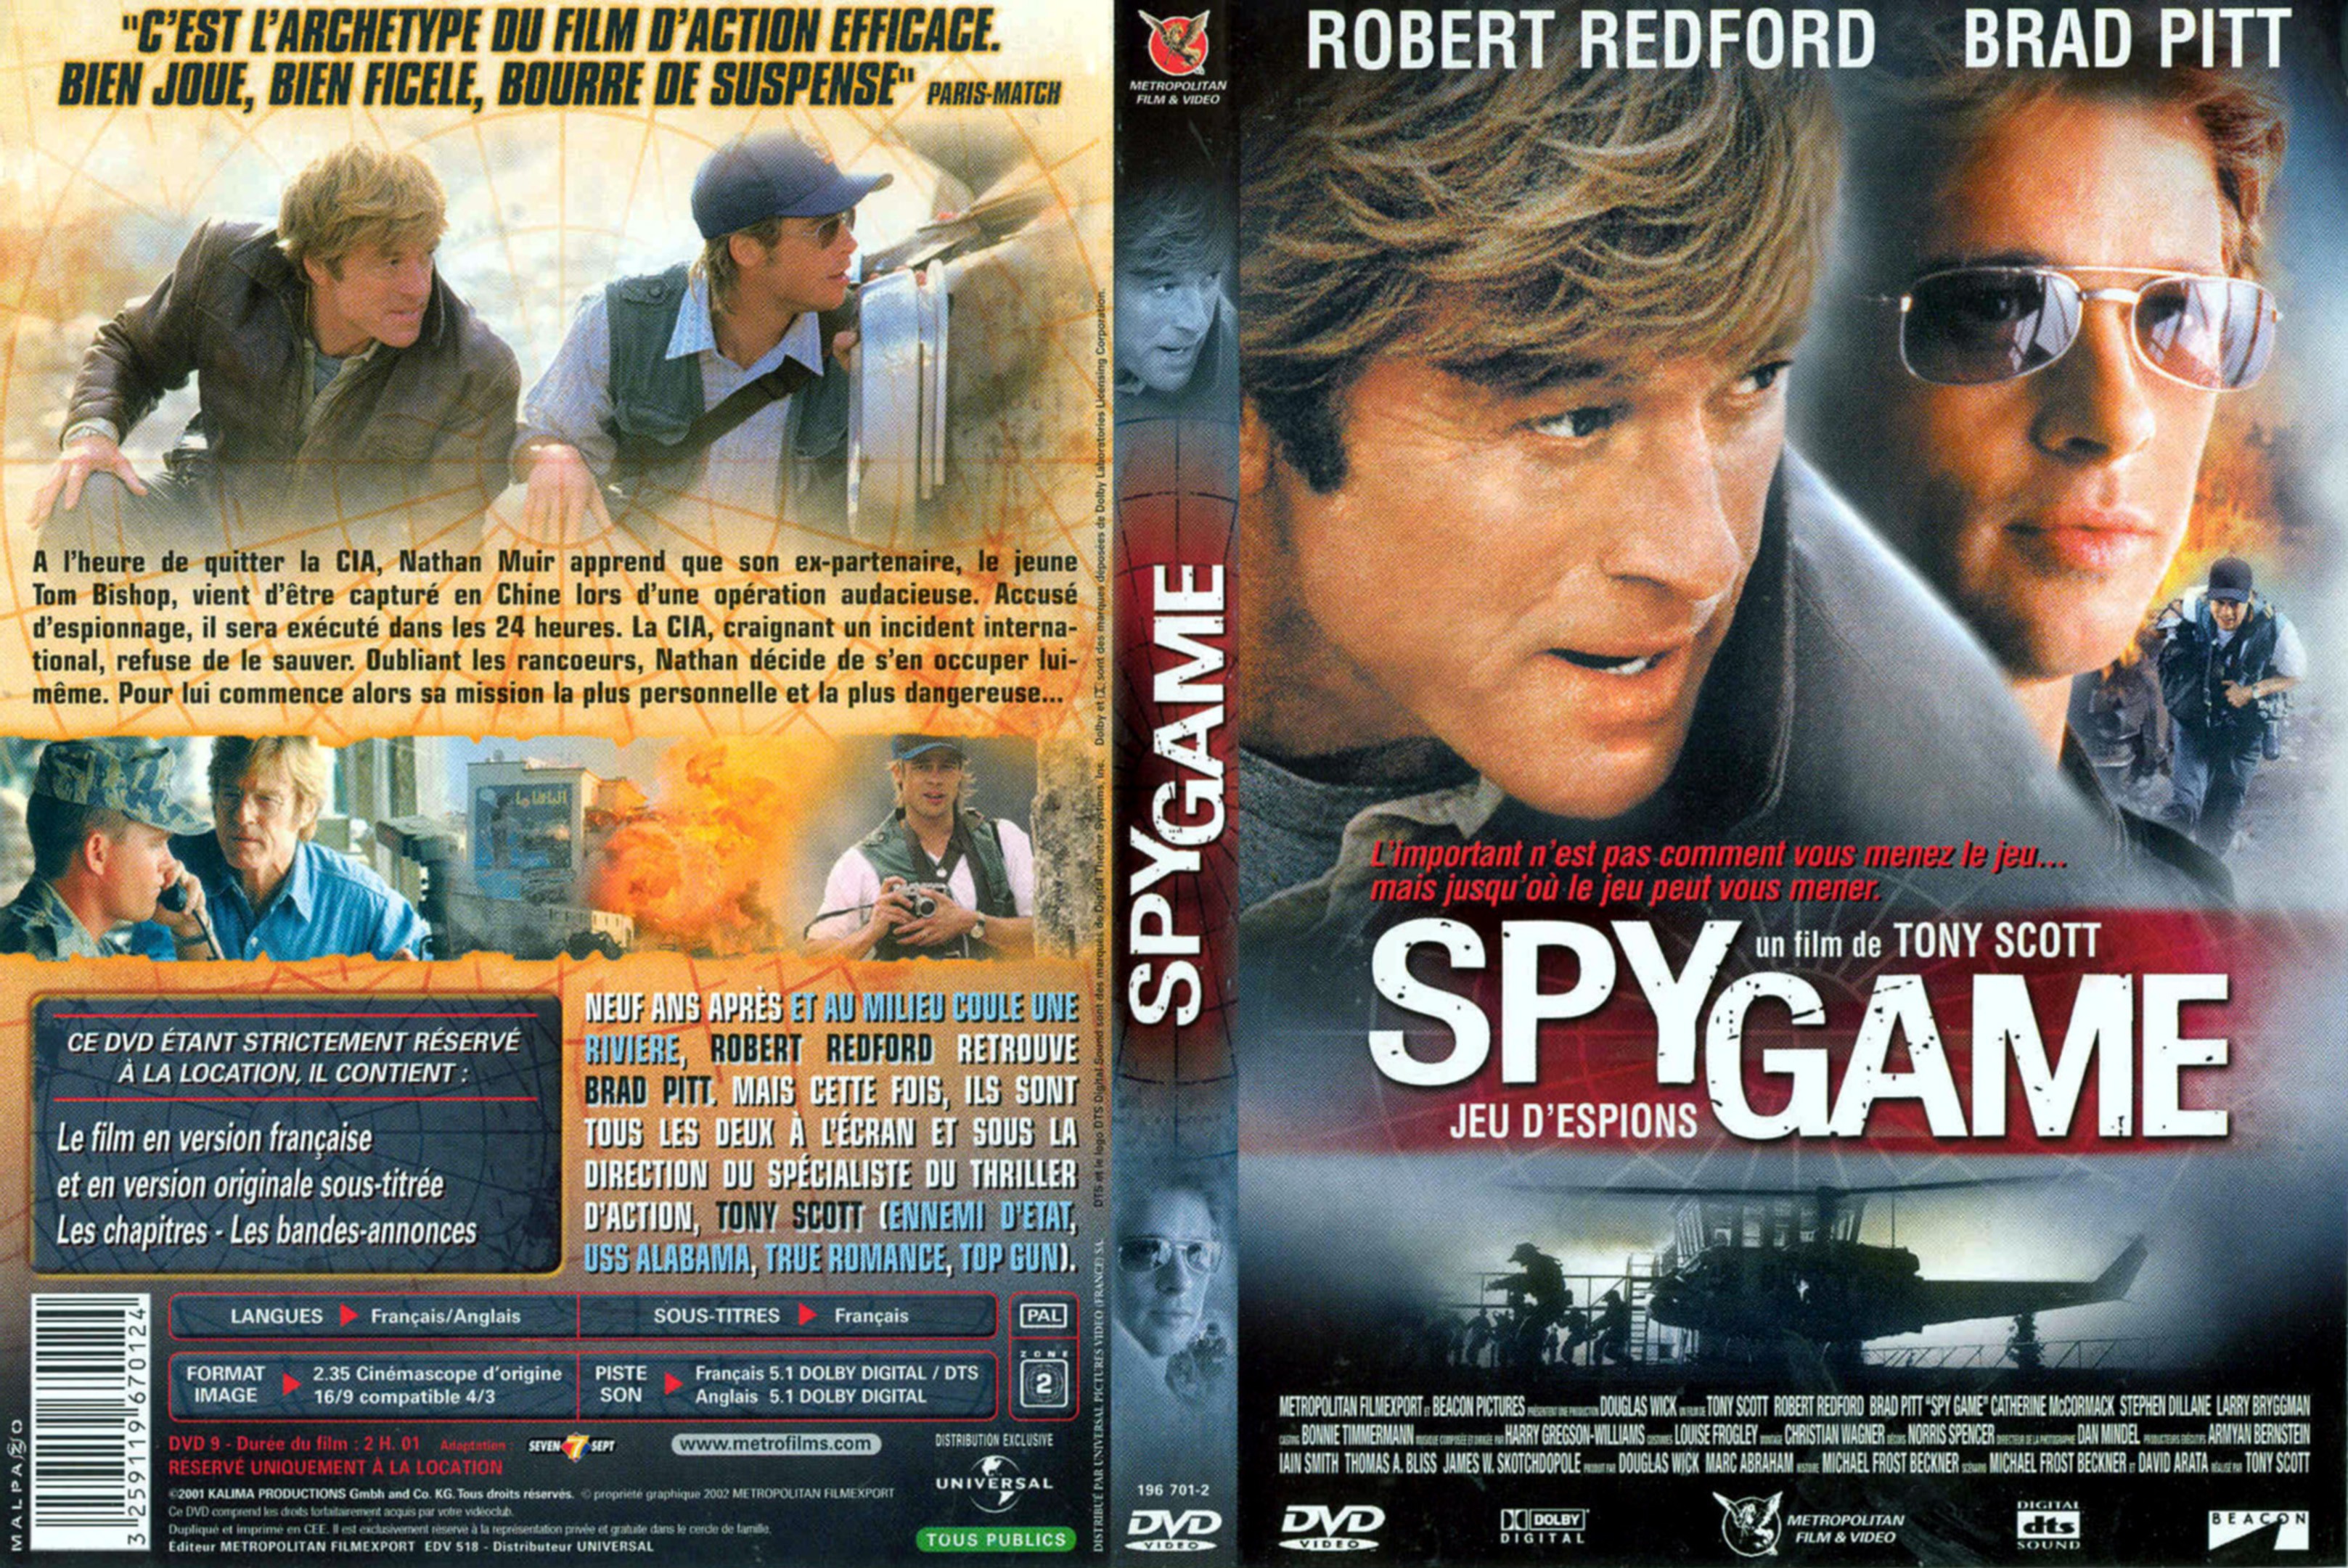 Jaquette DVD Spy game v2